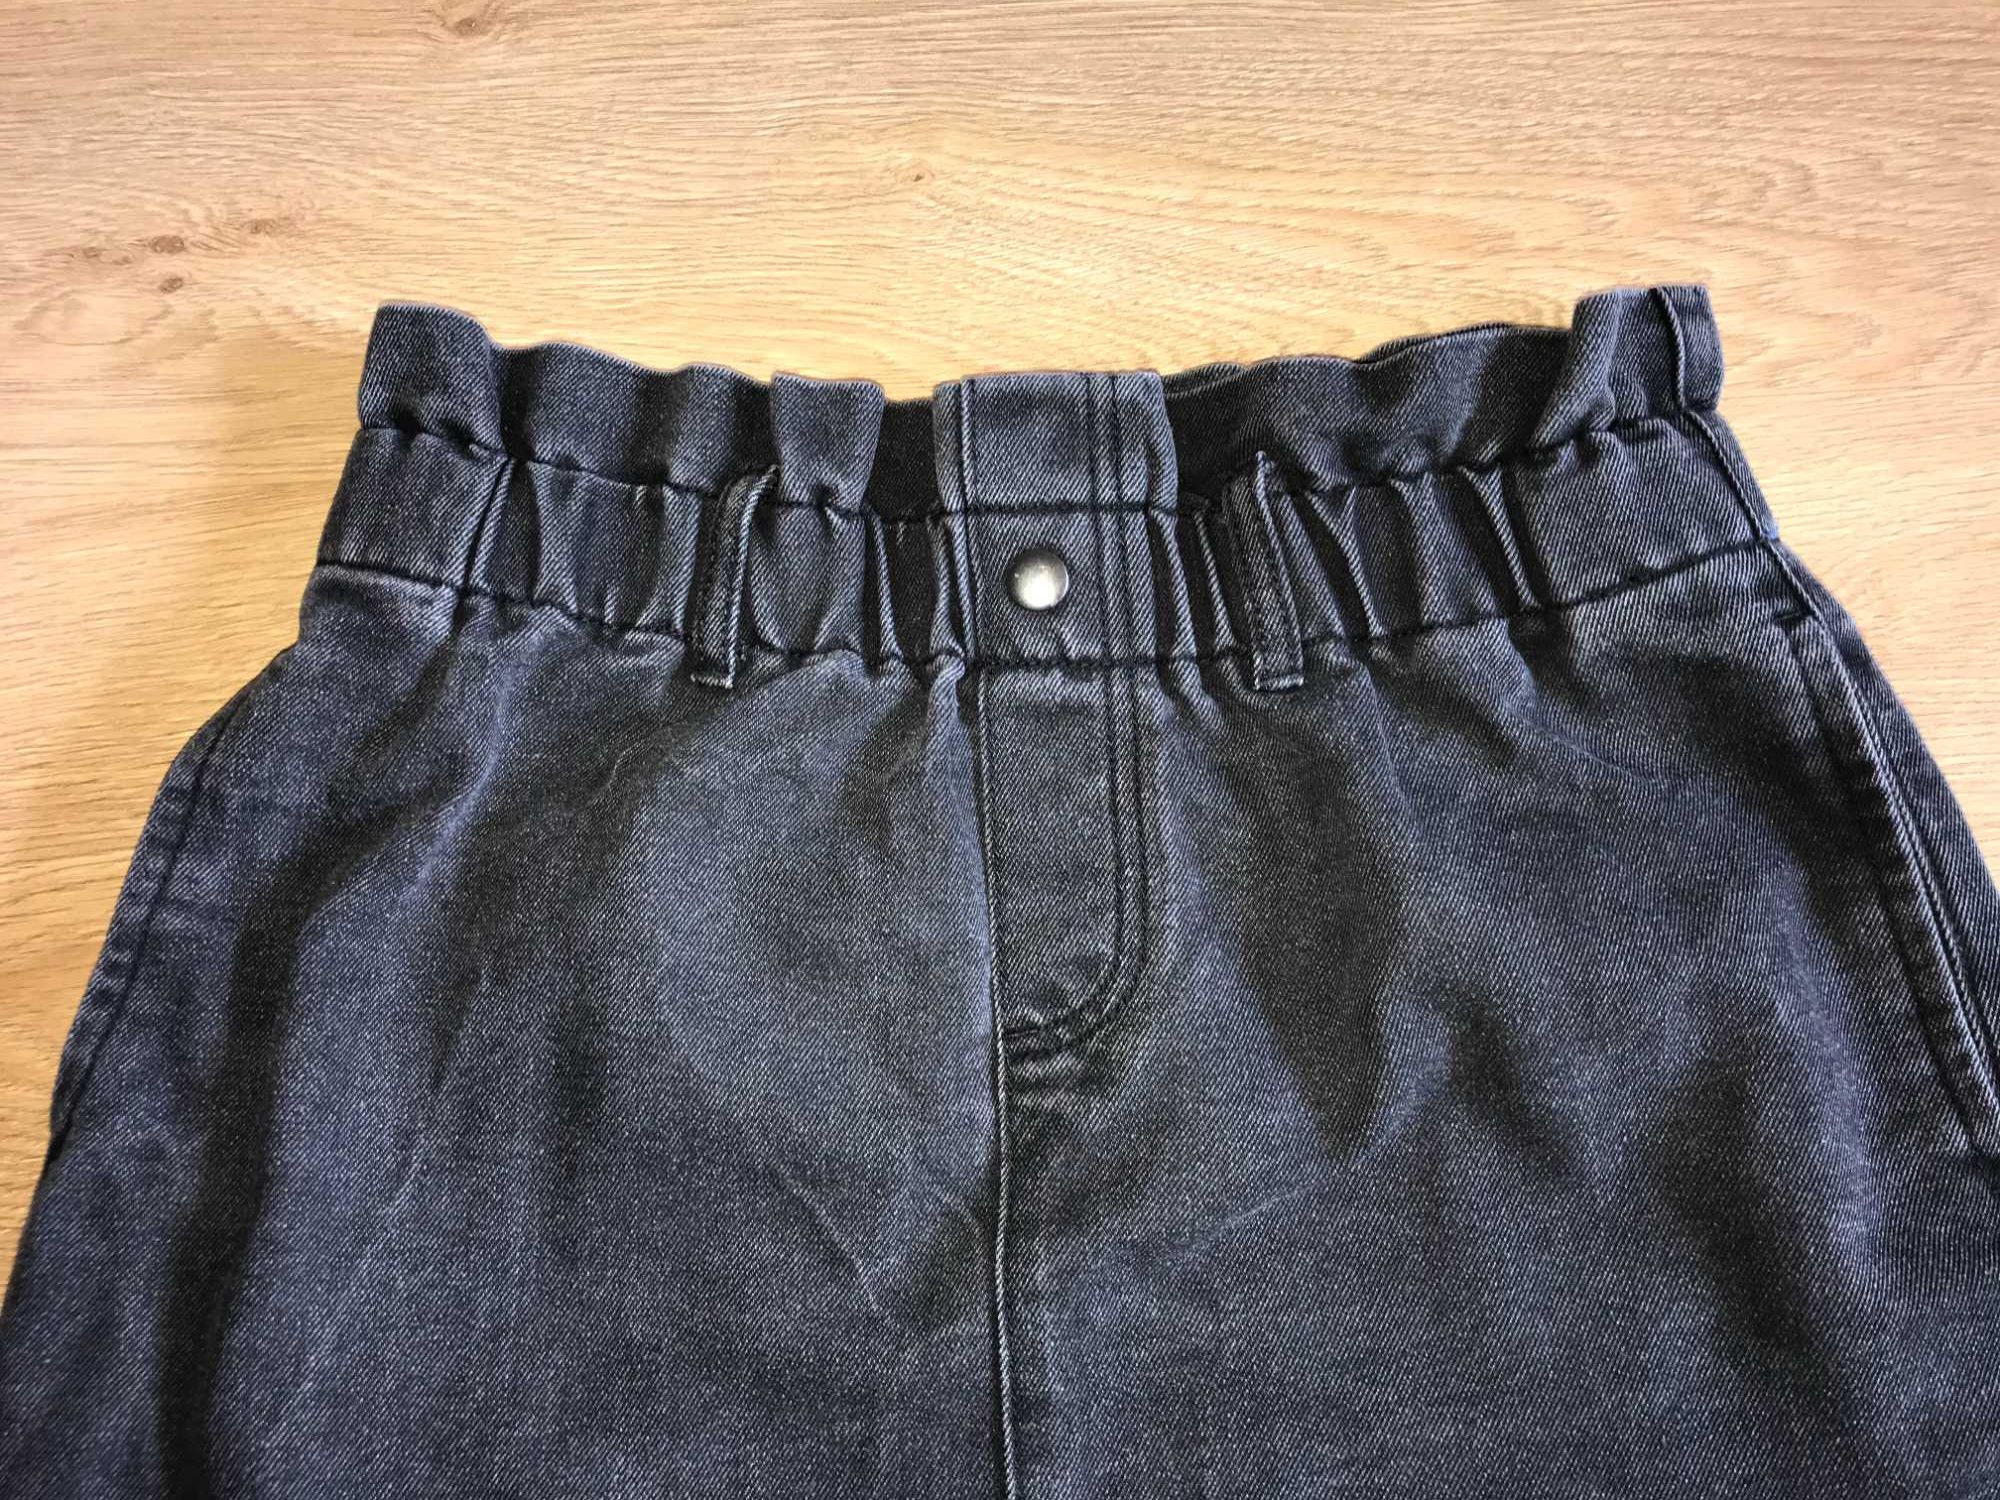 Серая джинсовая юбка. Размер S-M